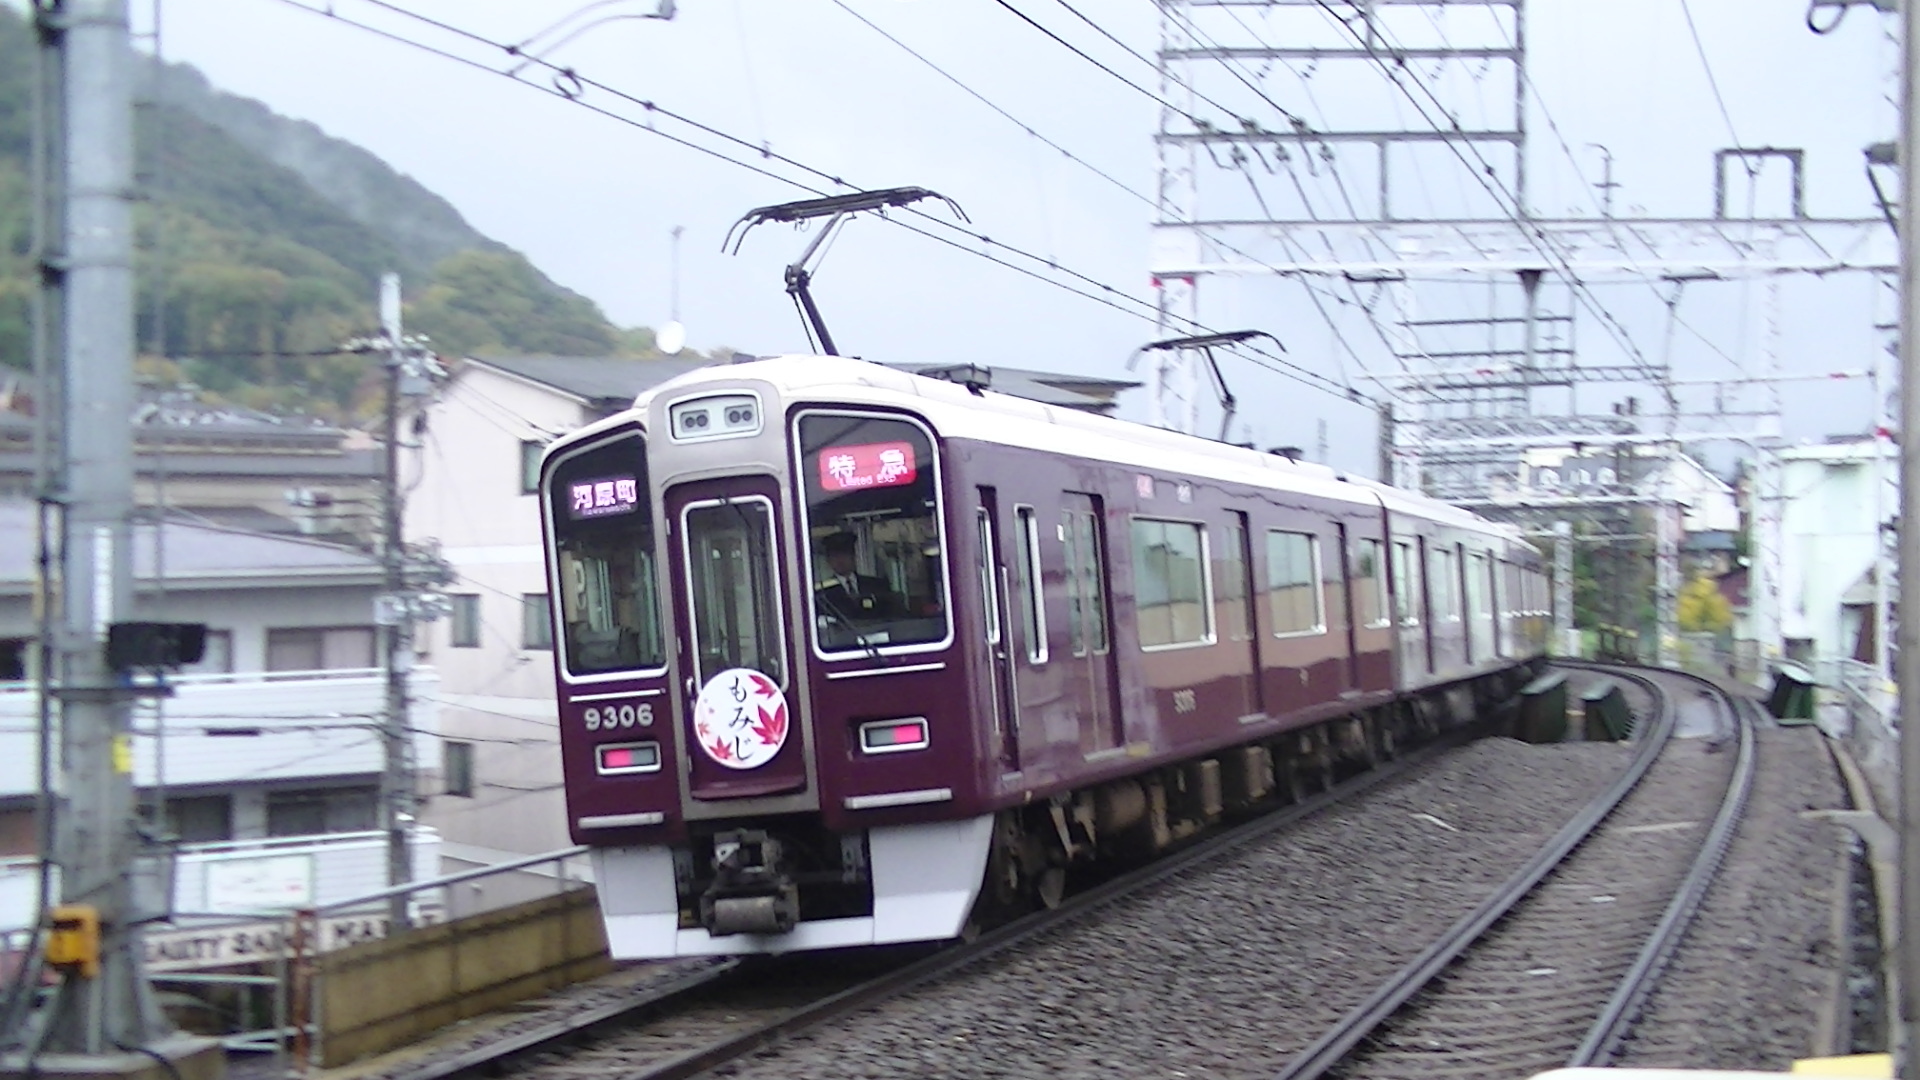 鉄道 電車 雨の中高速で通過する阪急電車 壁紙19x1080 壁紙館